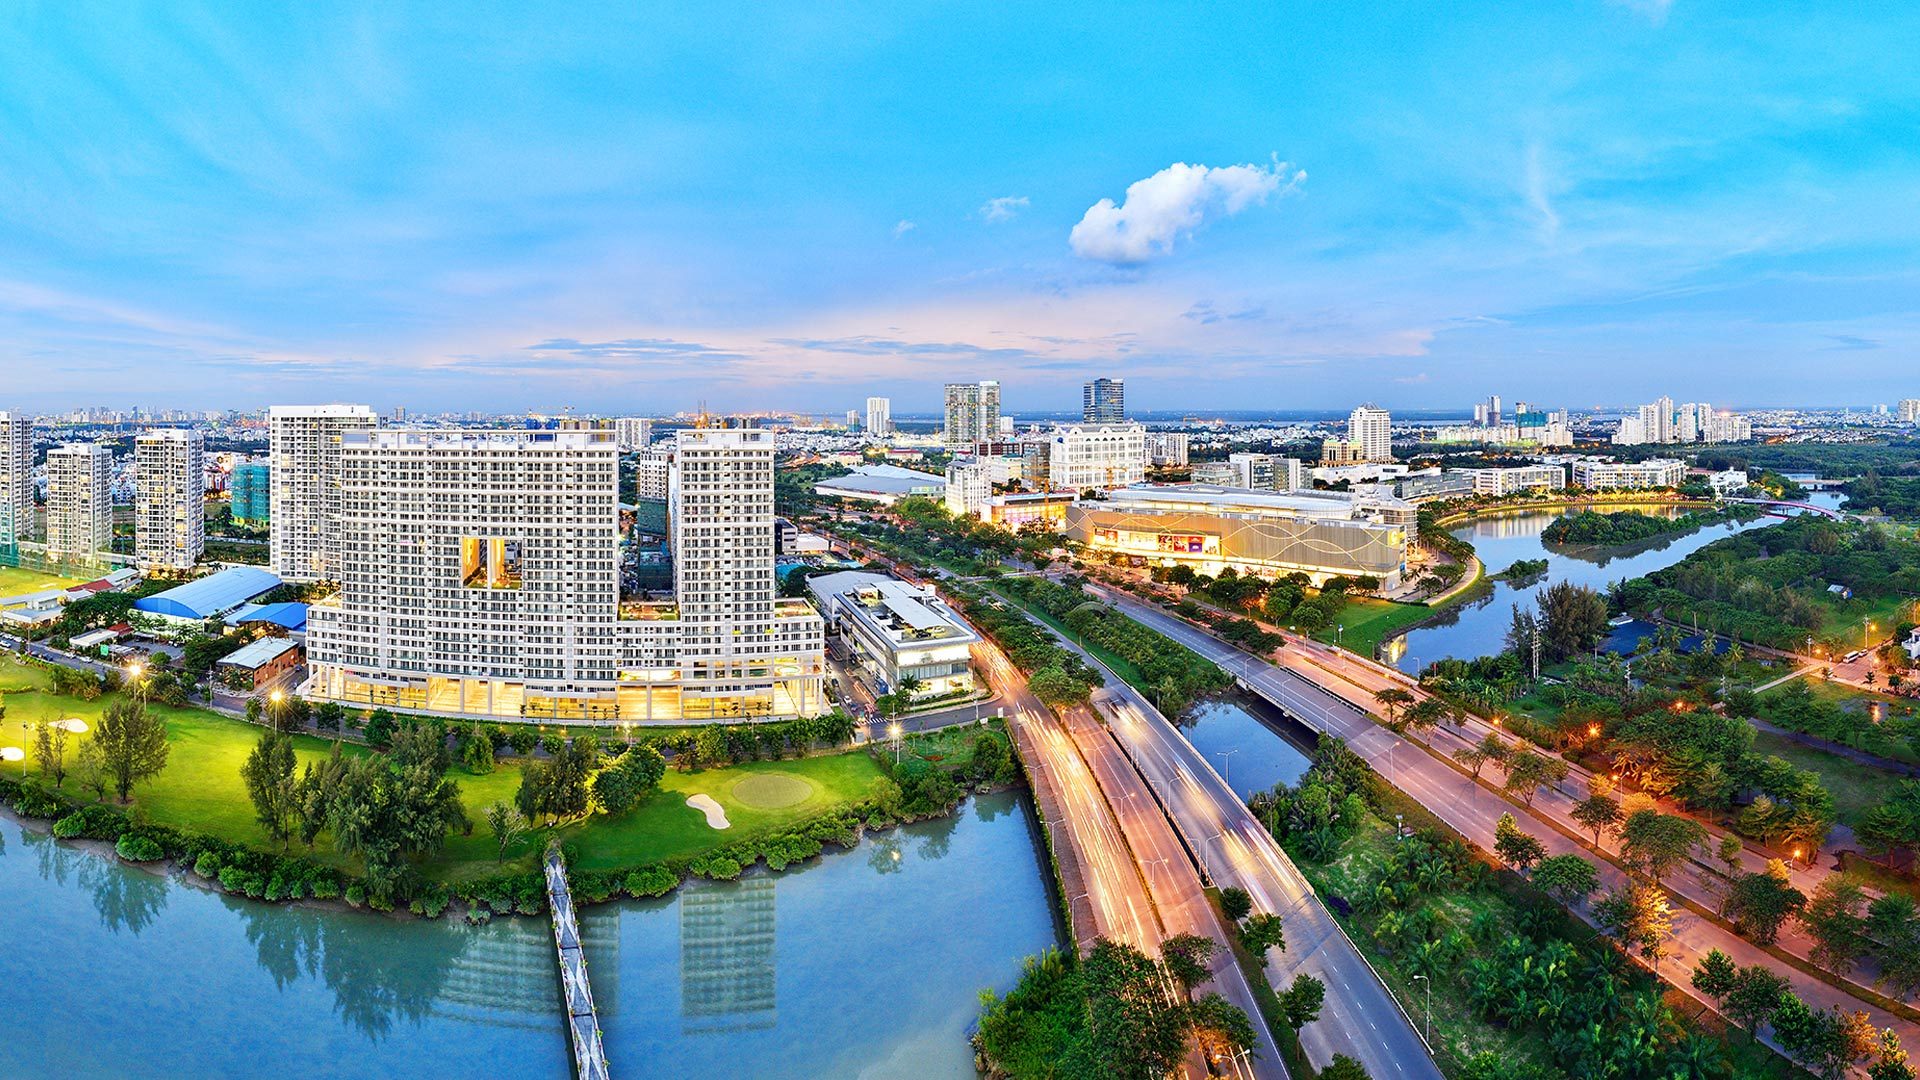 Quy hoạch đồng bộ hạ tầng kỹ thuật, mật độ cây xanh cao và tiện ích dịch vụ đa chức năng là điểm mạnh của đô thị Phú Mỹ Hưng